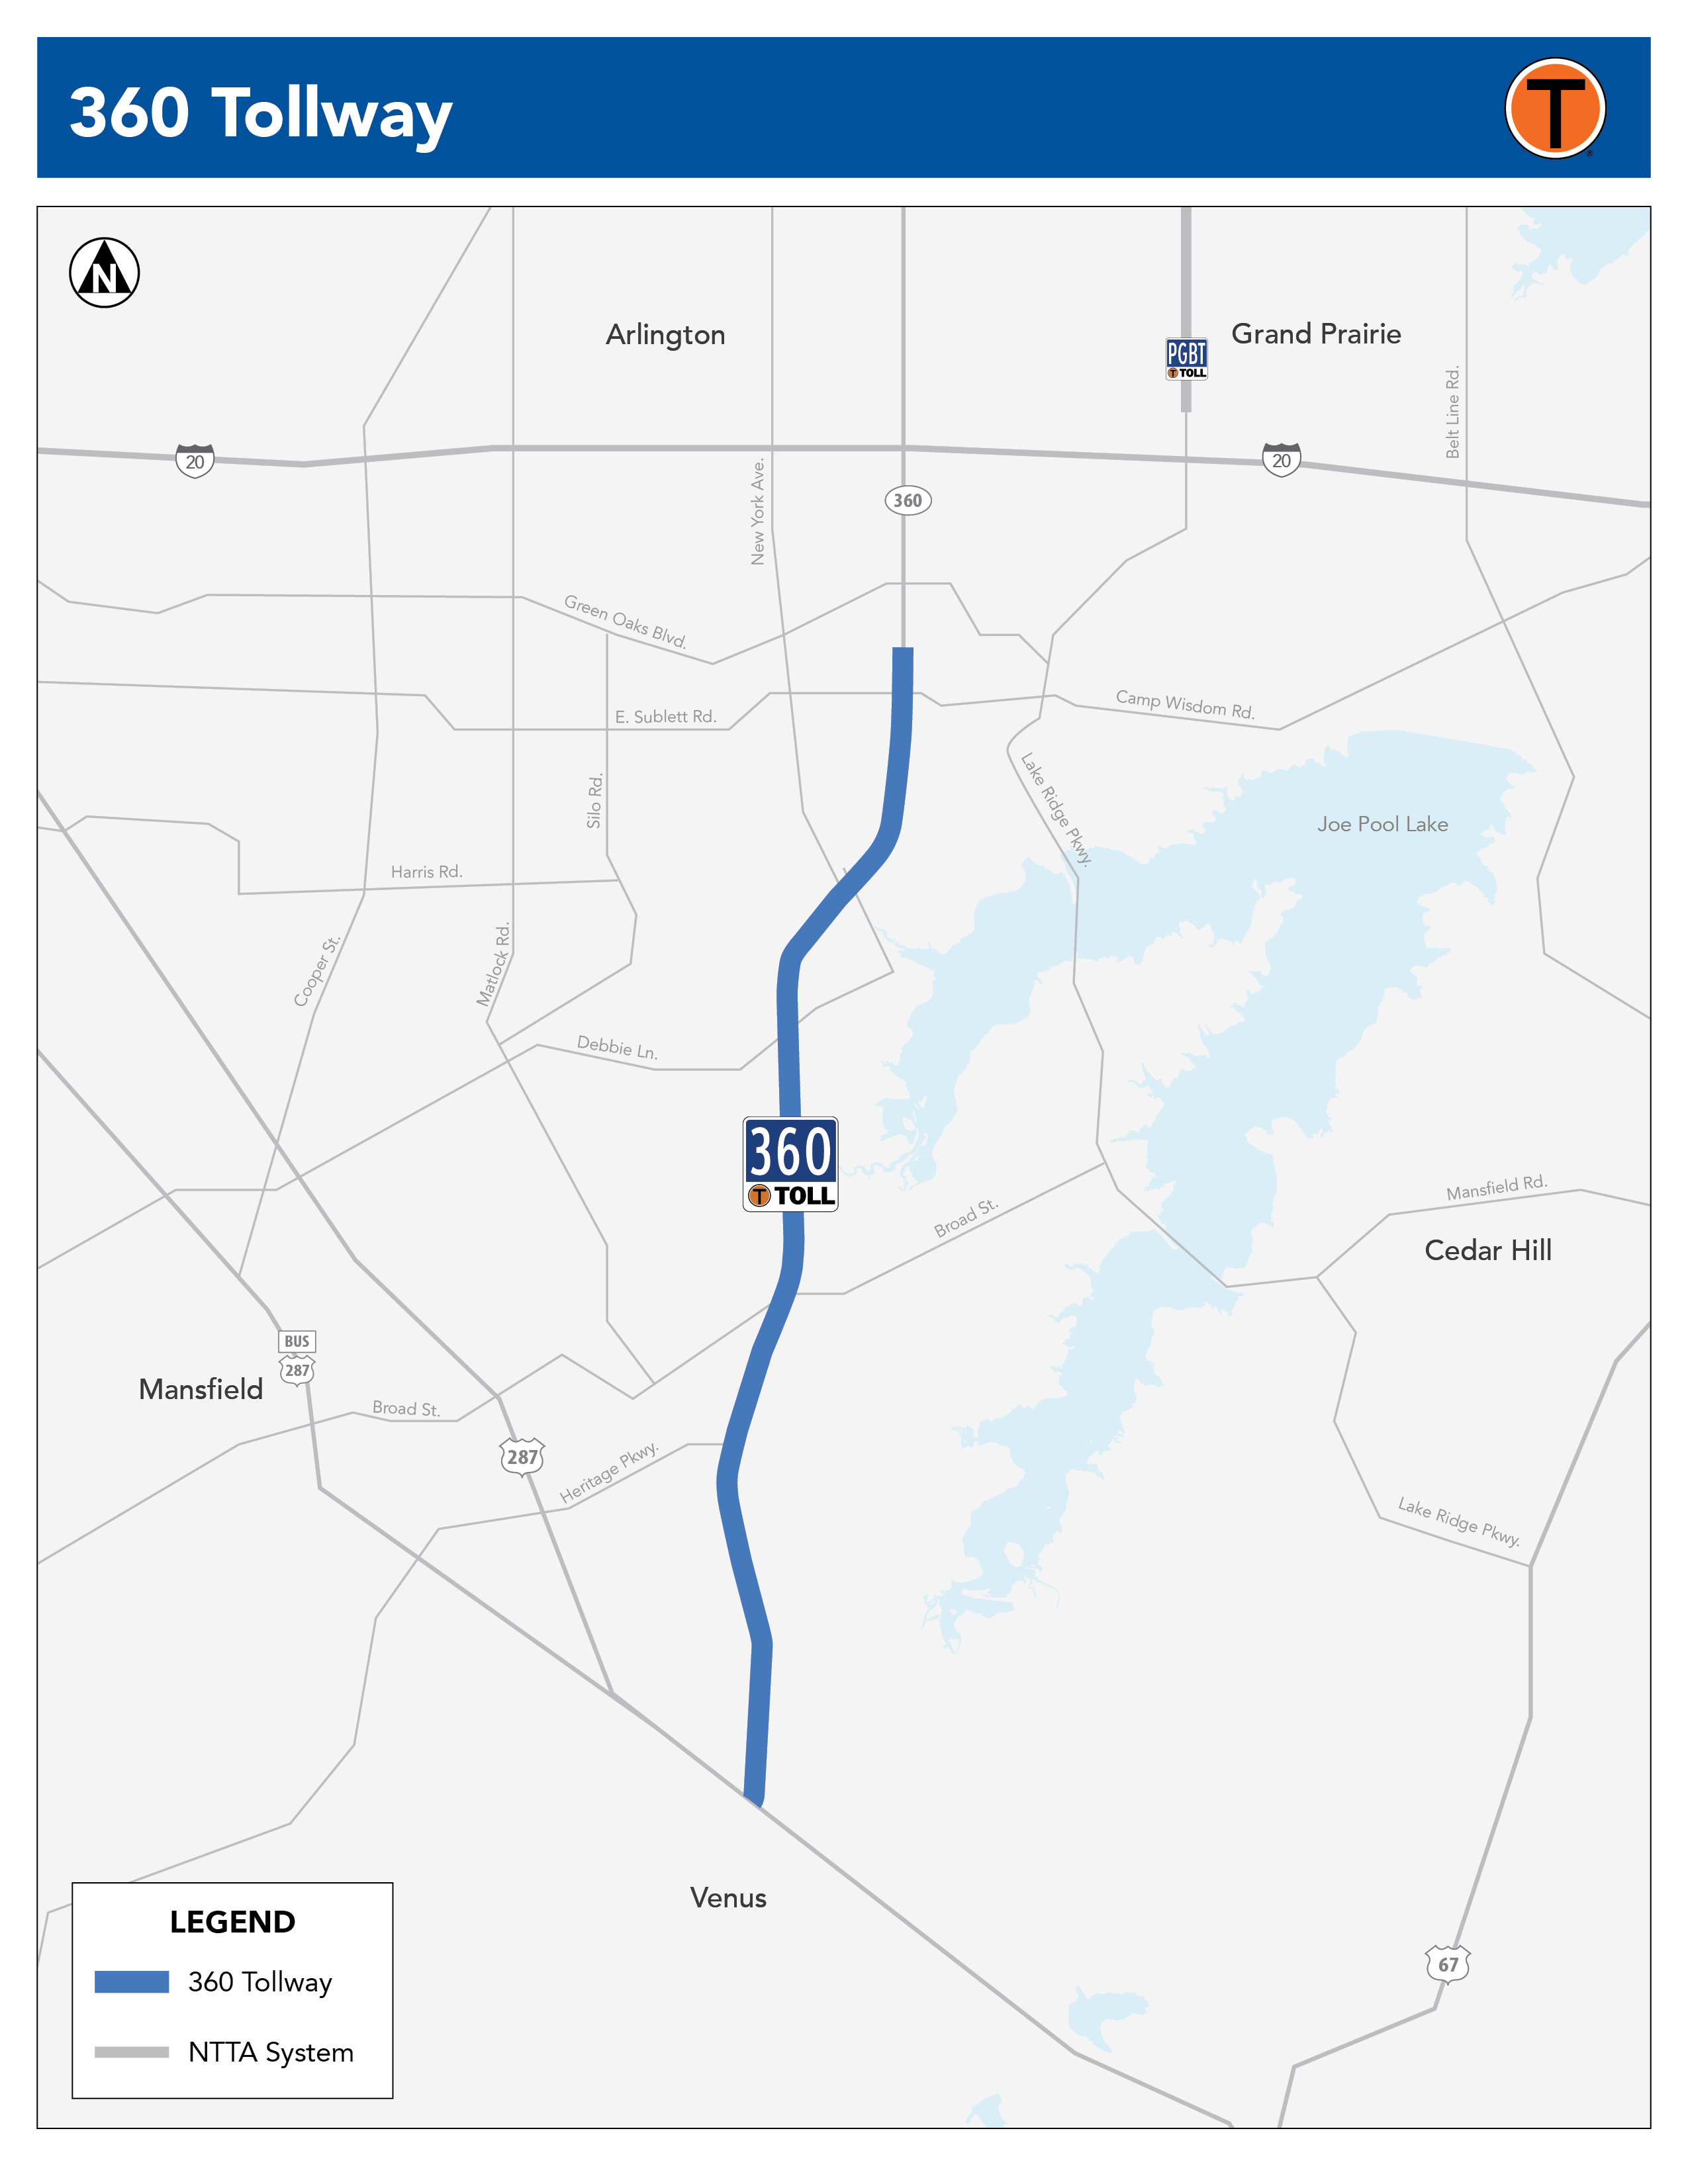 360 Tollway Corridor Map